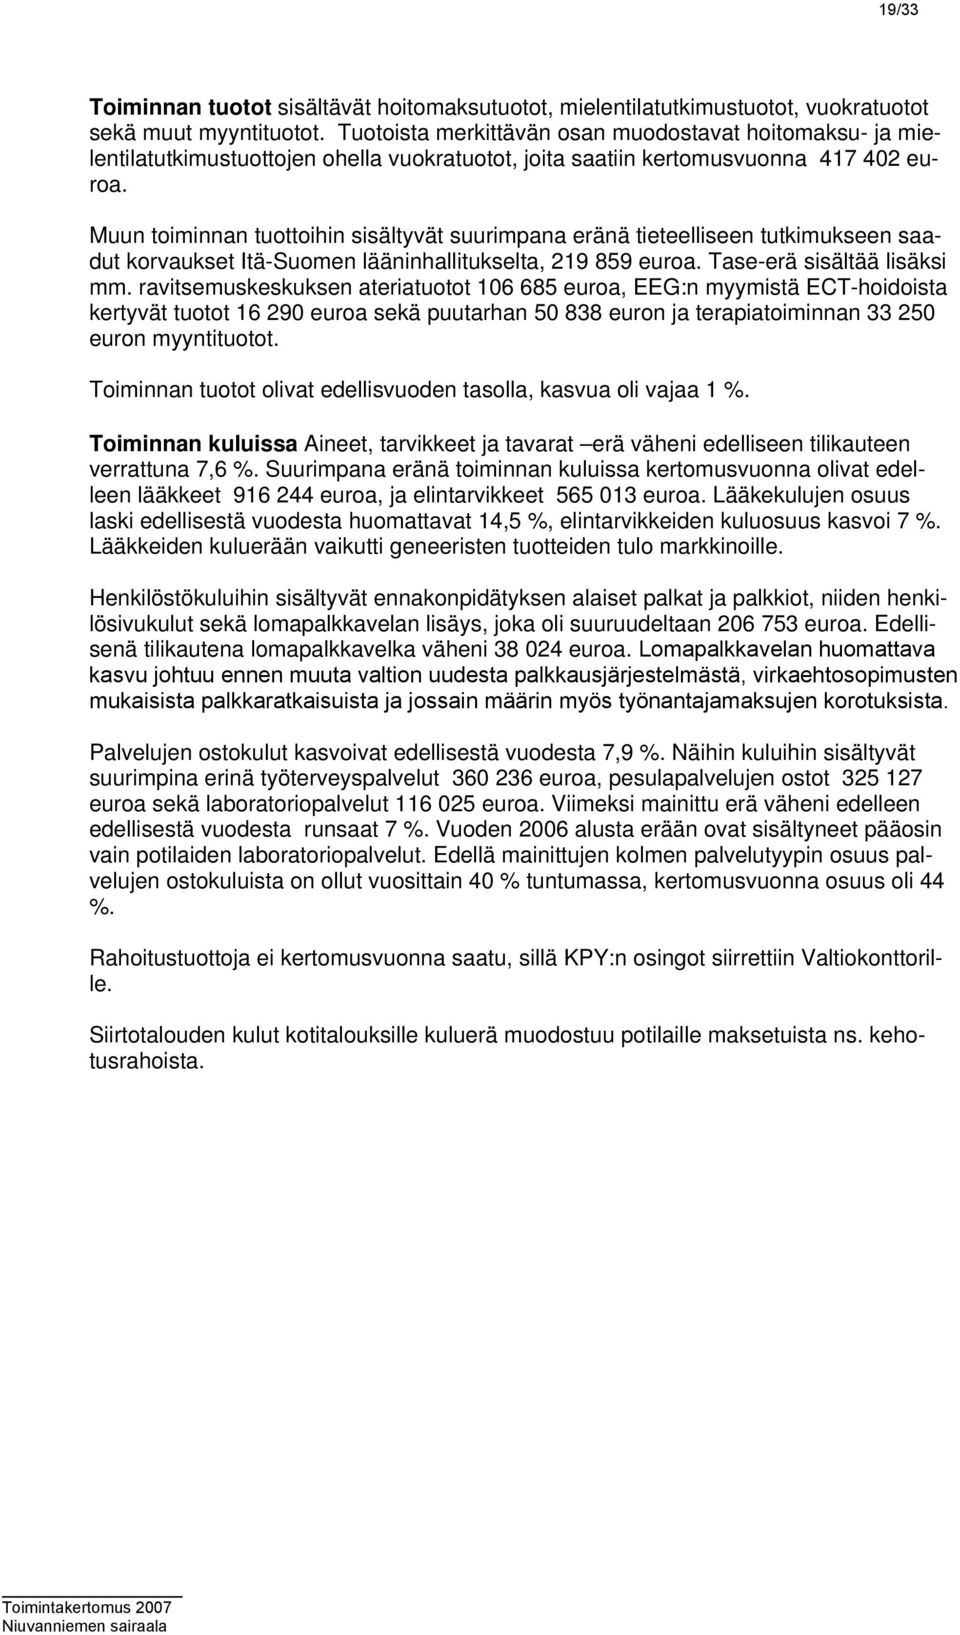 Muun toiminnan tuottoihin sisältyvät suurimpana eränä tieteelliseen tutkimukseen saadut korvaukset Itä-Suomen lääninhallitukselta, 219 859 euroa. Tase-erä sisältää lisäksi mm.